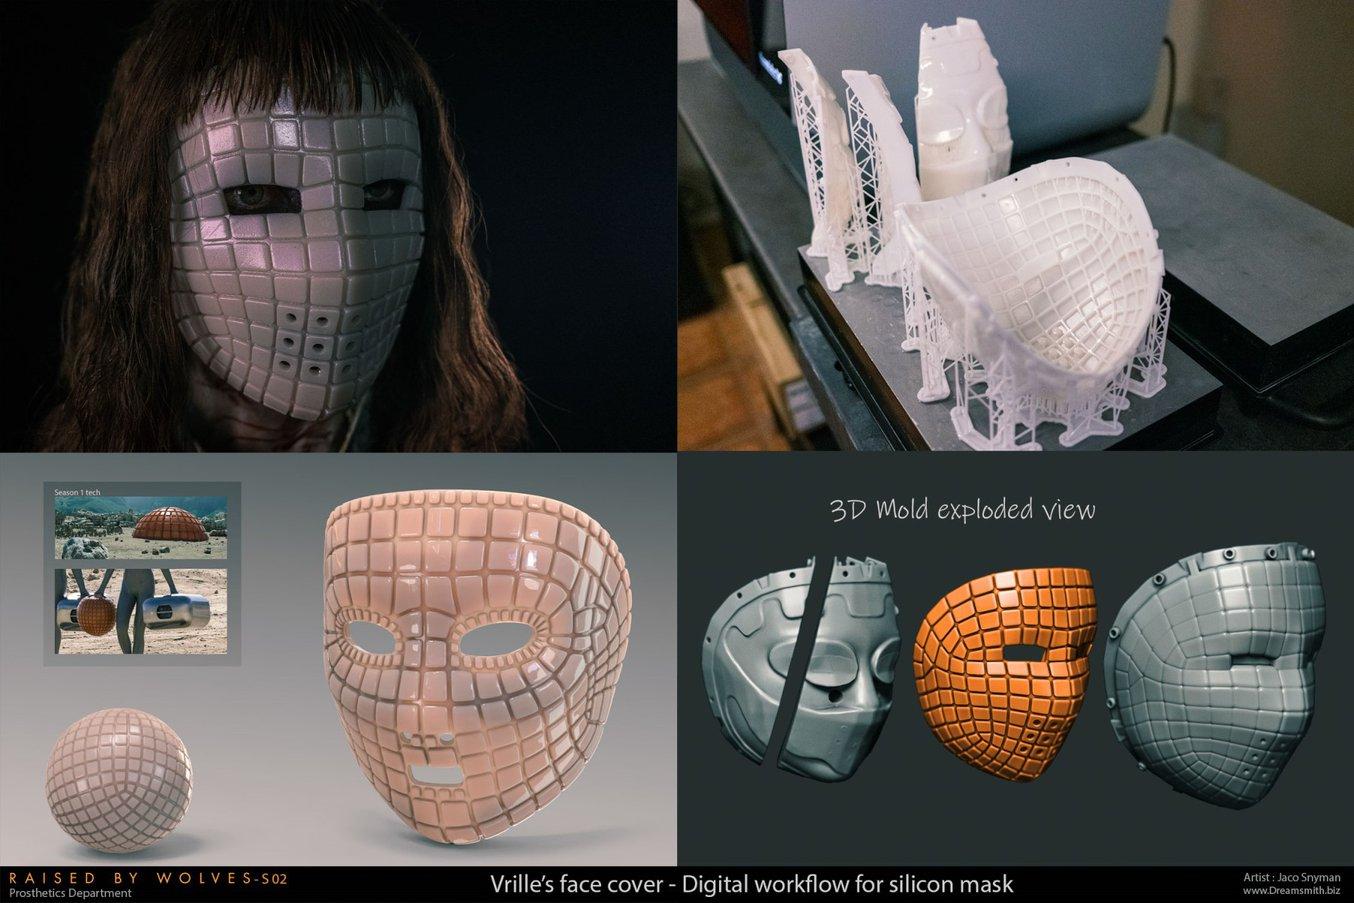 Diseño e impresión de una máscara de forma compleja y alto nivel de detalle con impresión 3D.